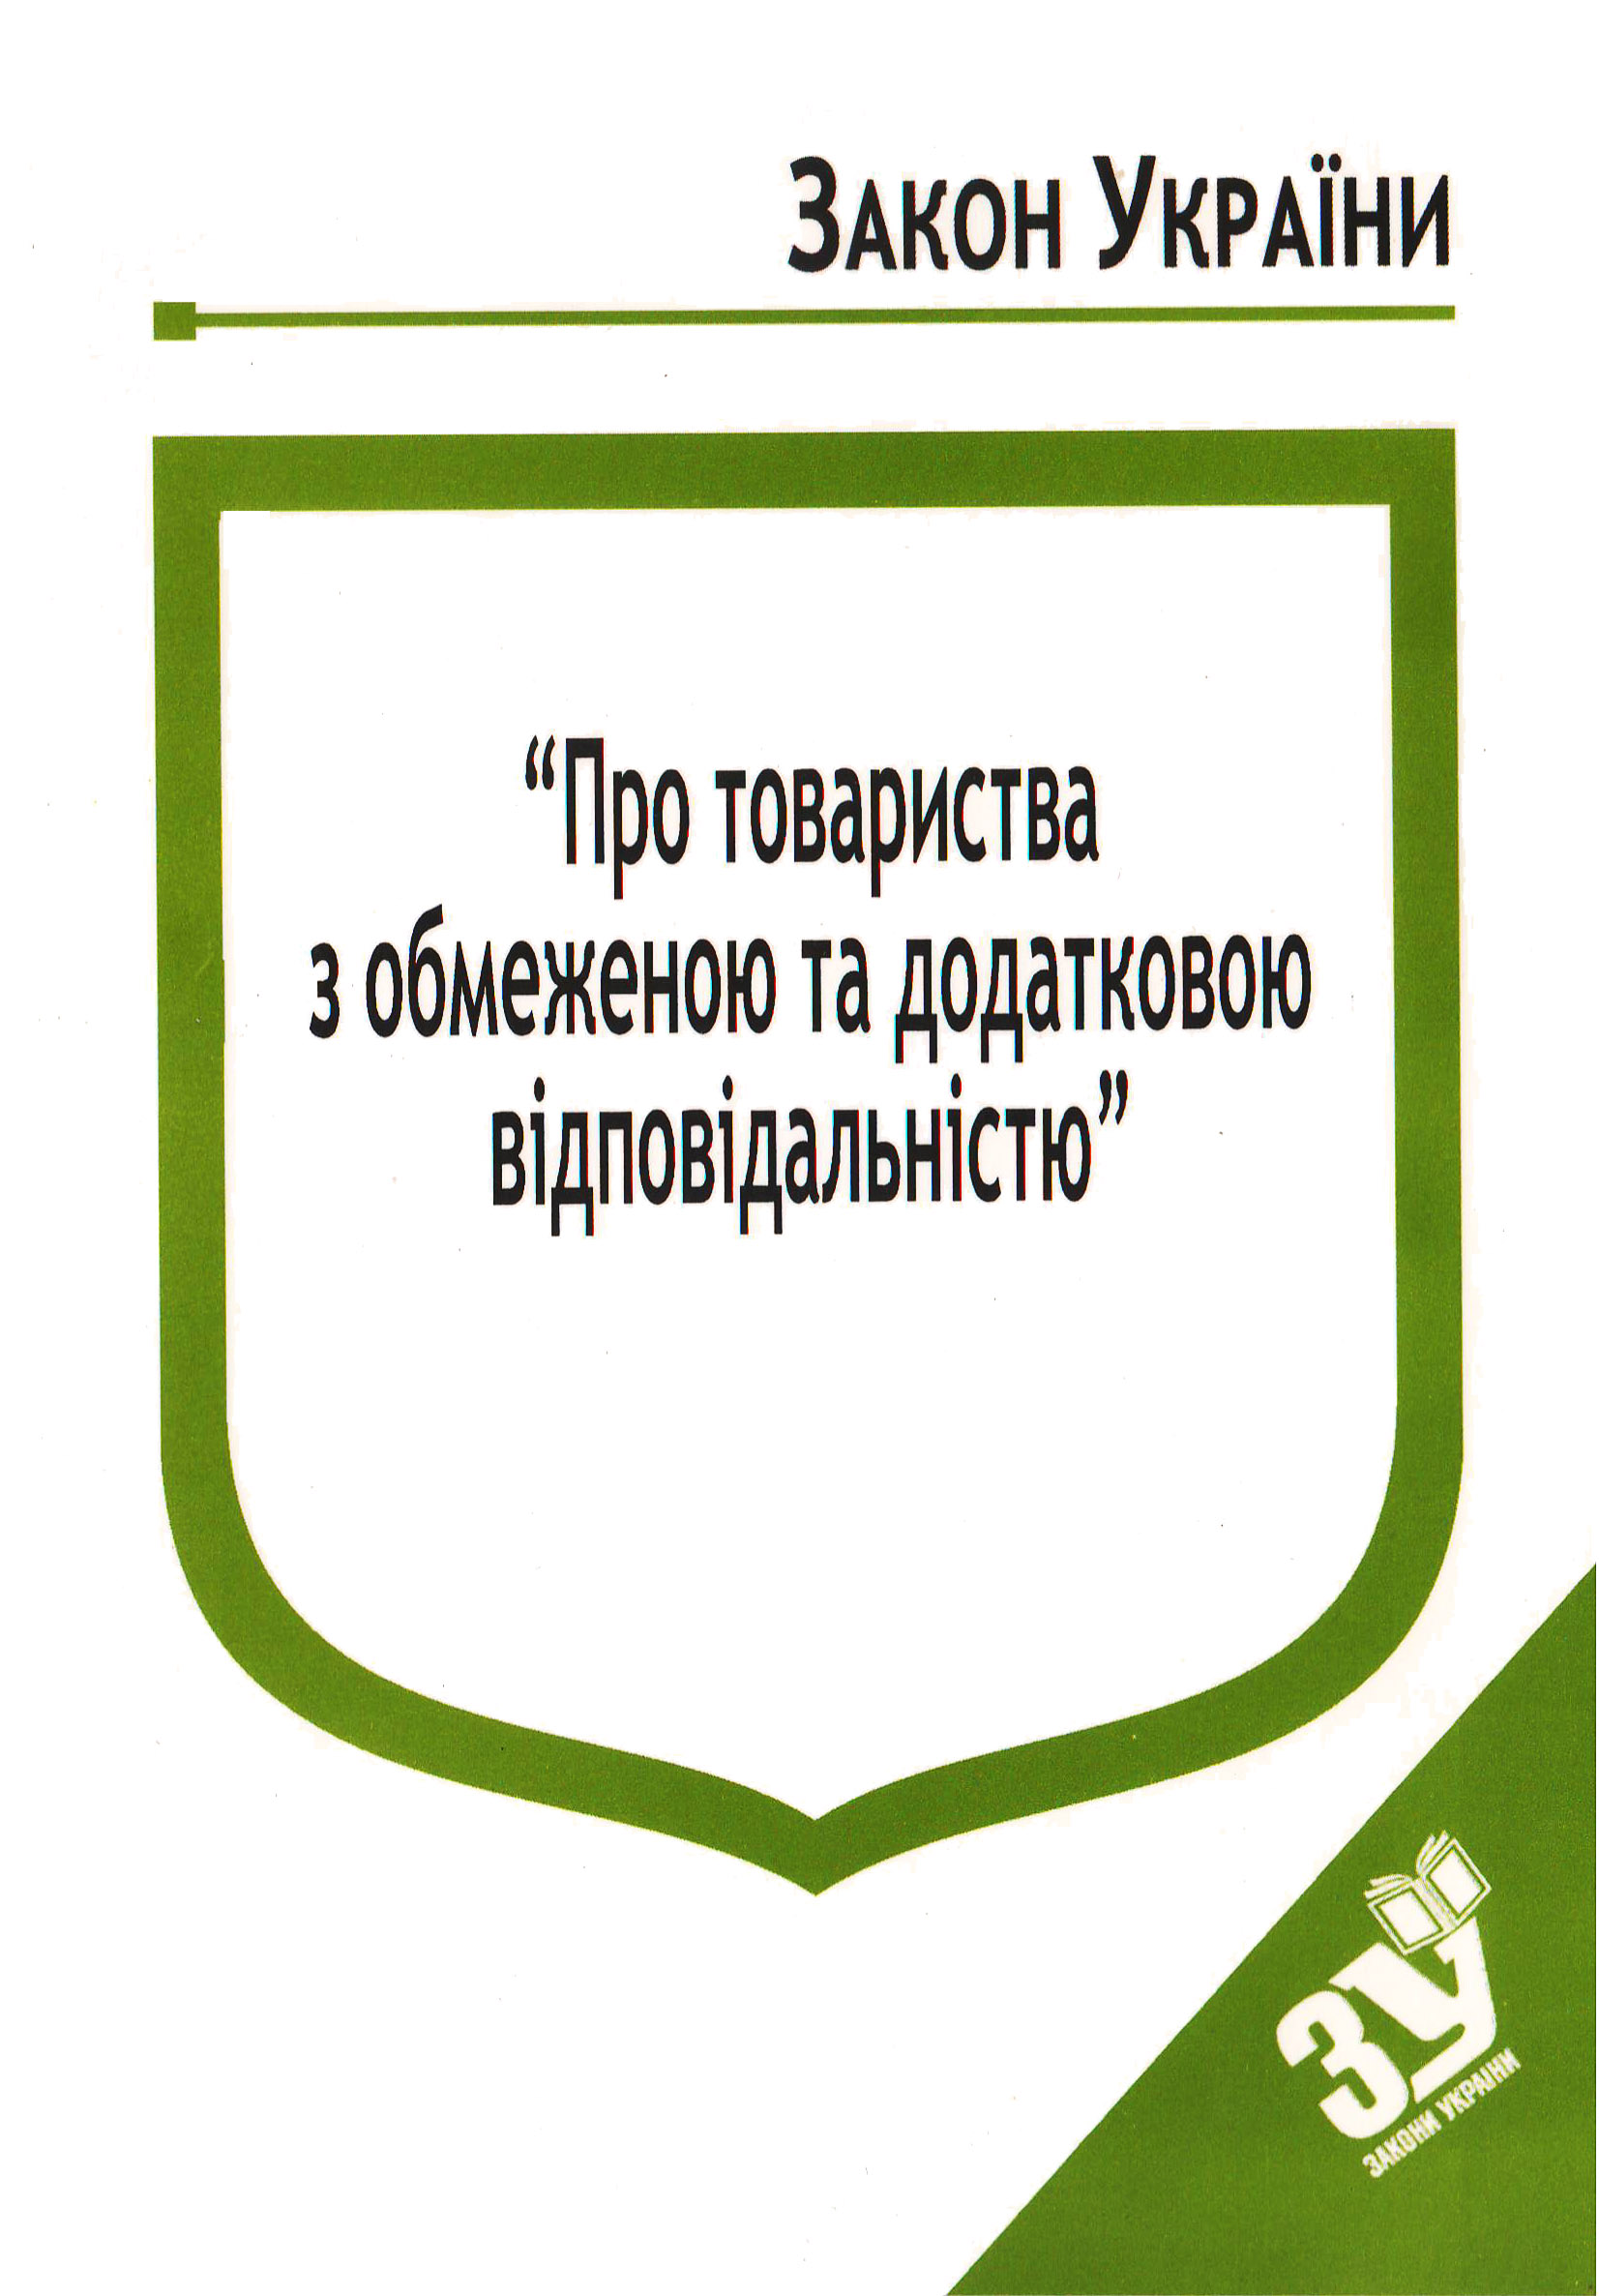 придбати книгу Закон України Про Товариства з обмеженою та додатковою відповідальністю